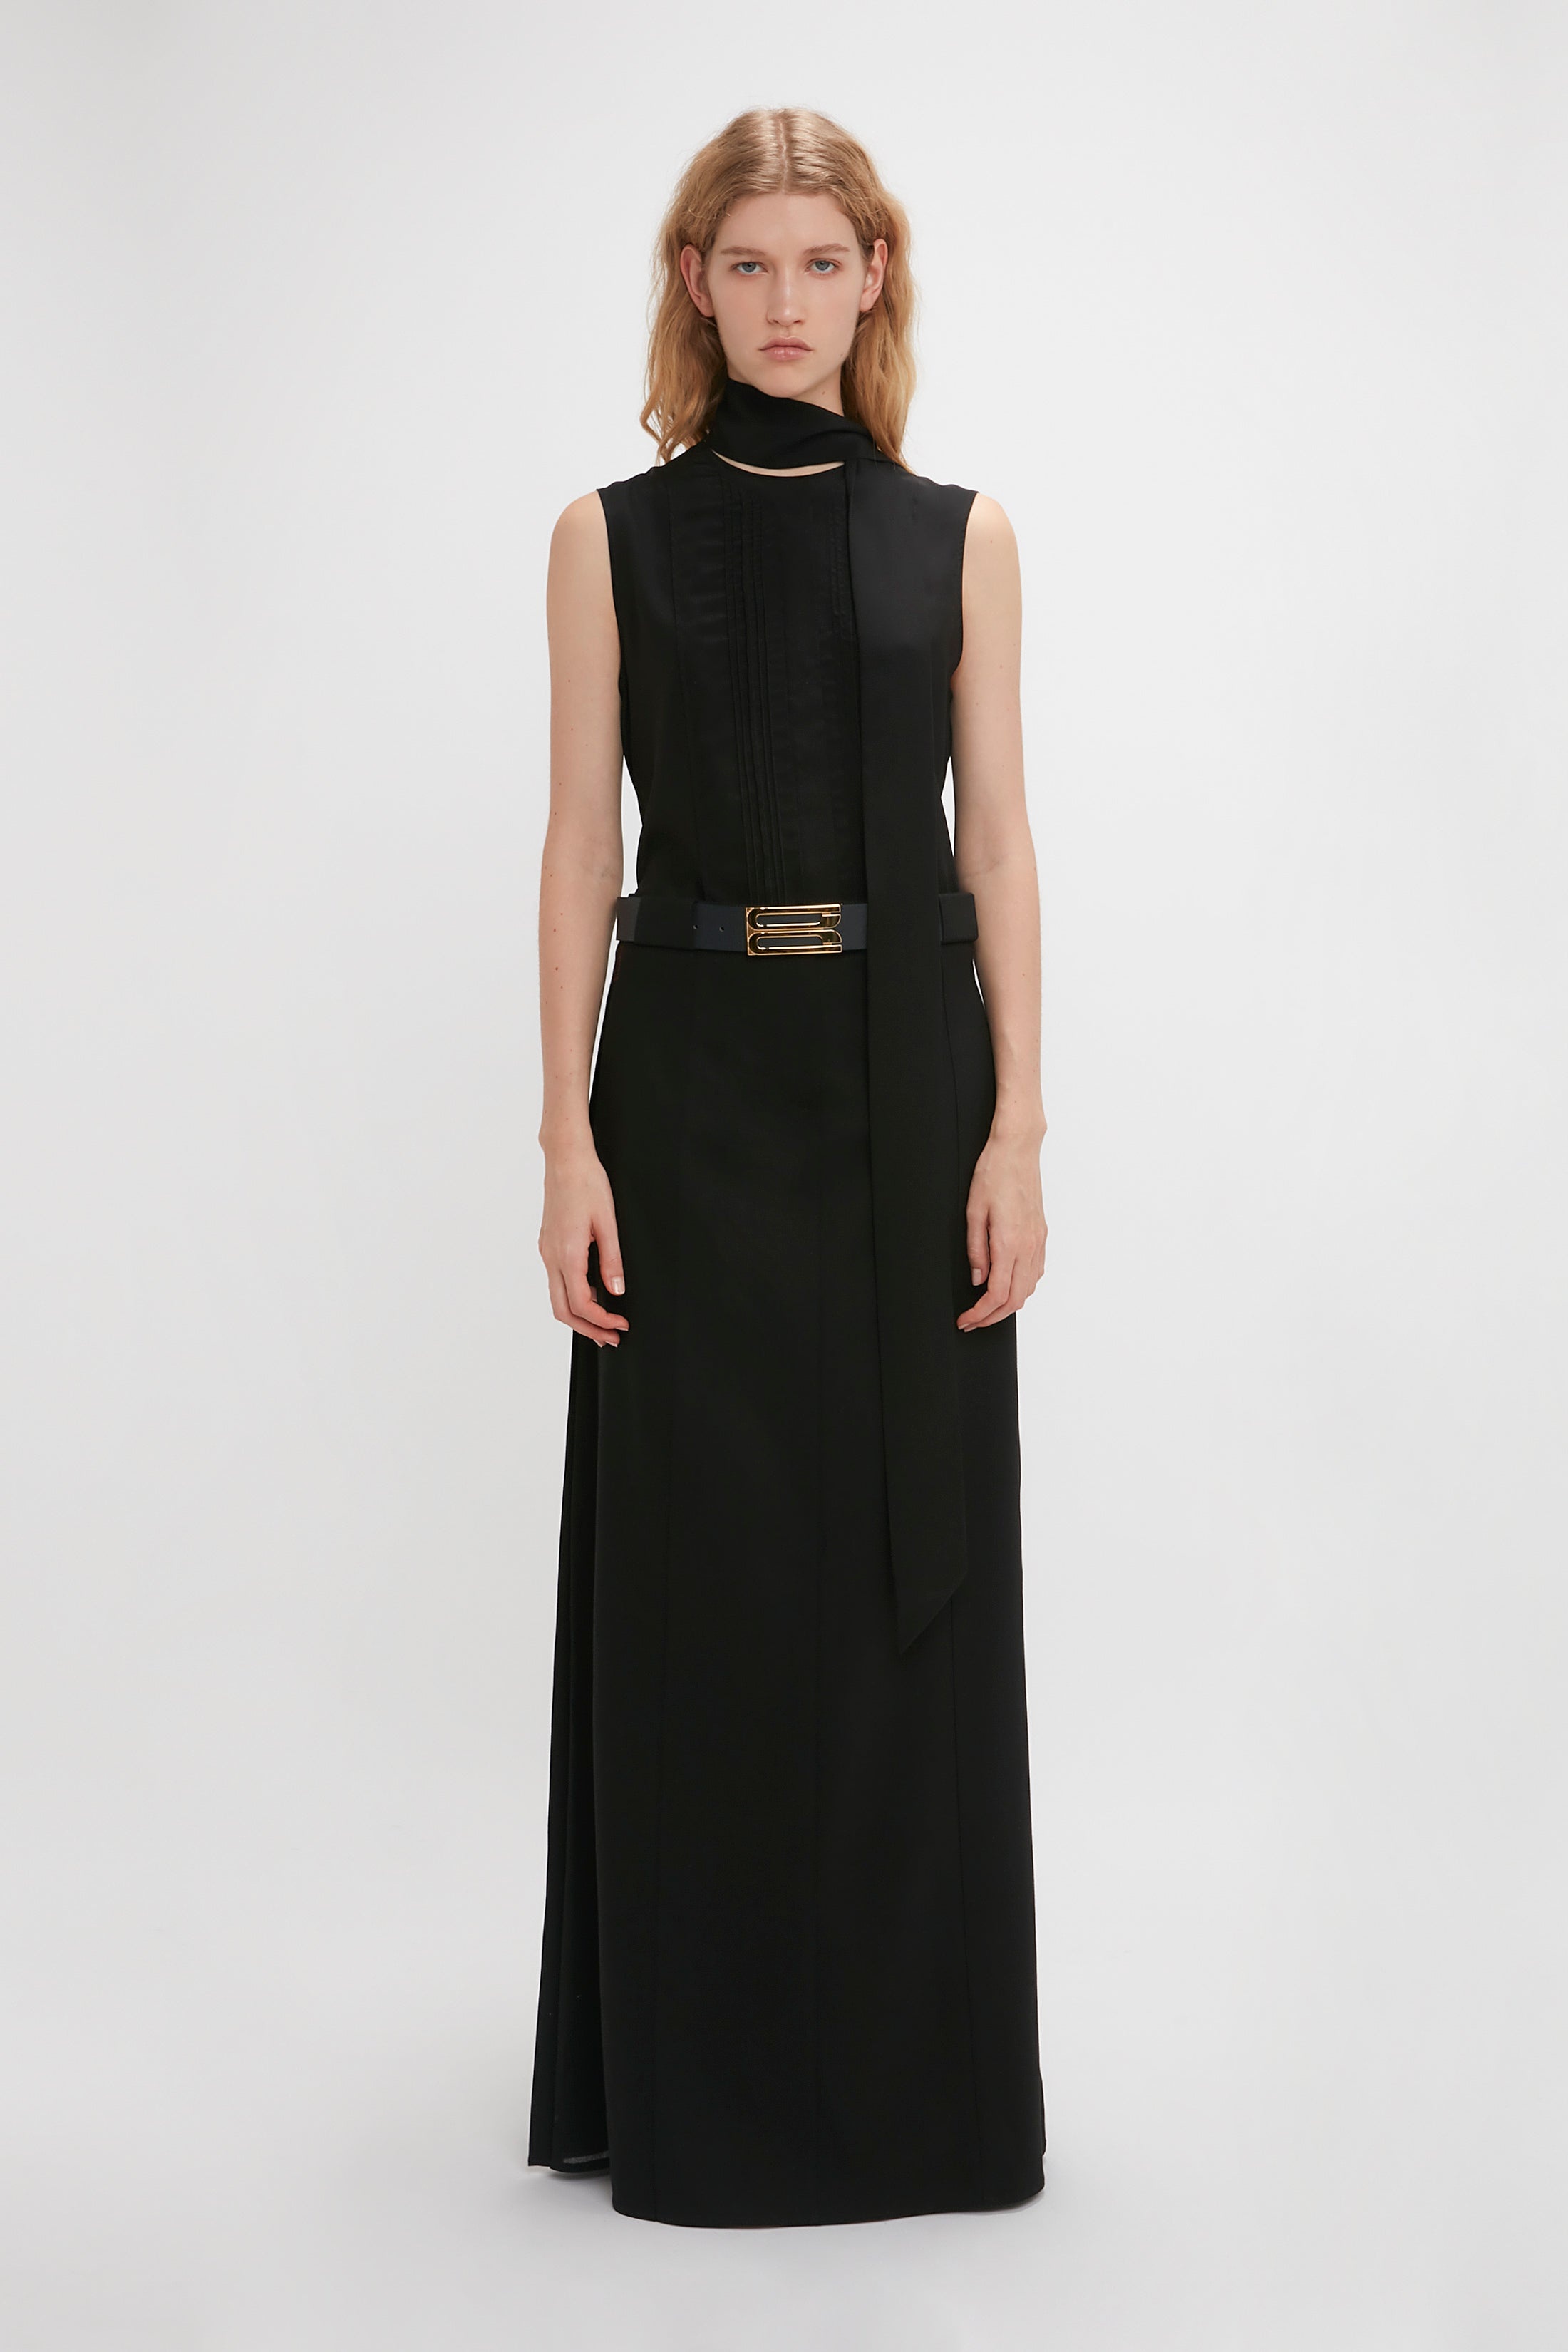 Tailored Floor-Length Skirt In Black - 2